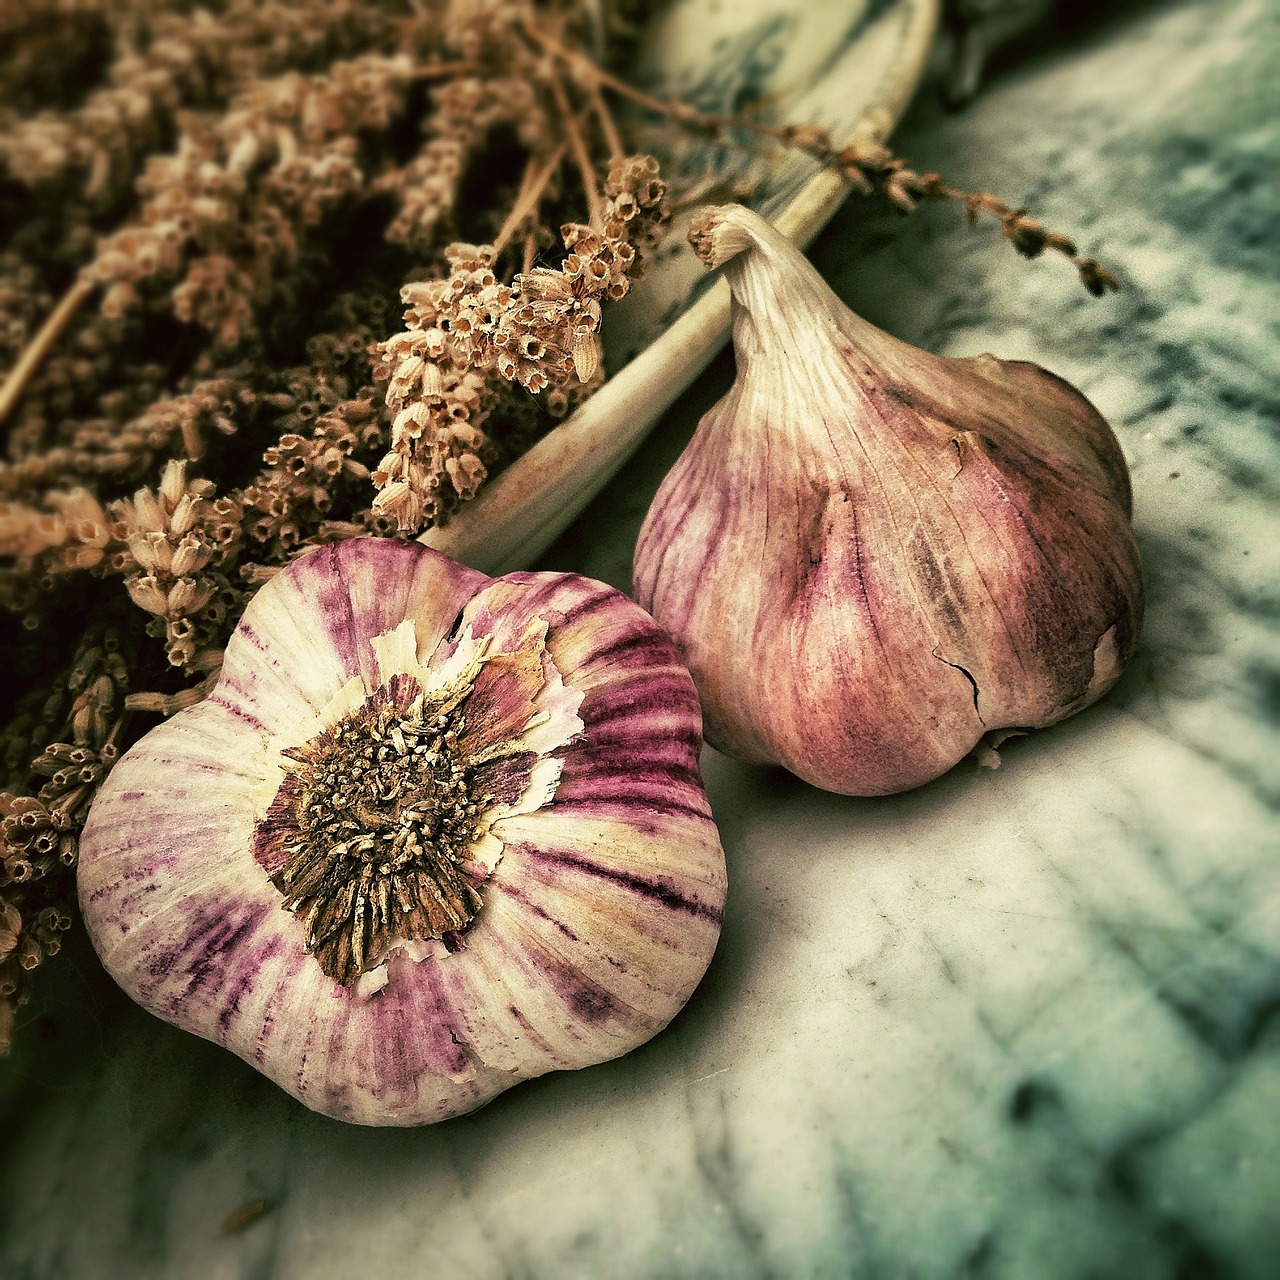 aged garlic